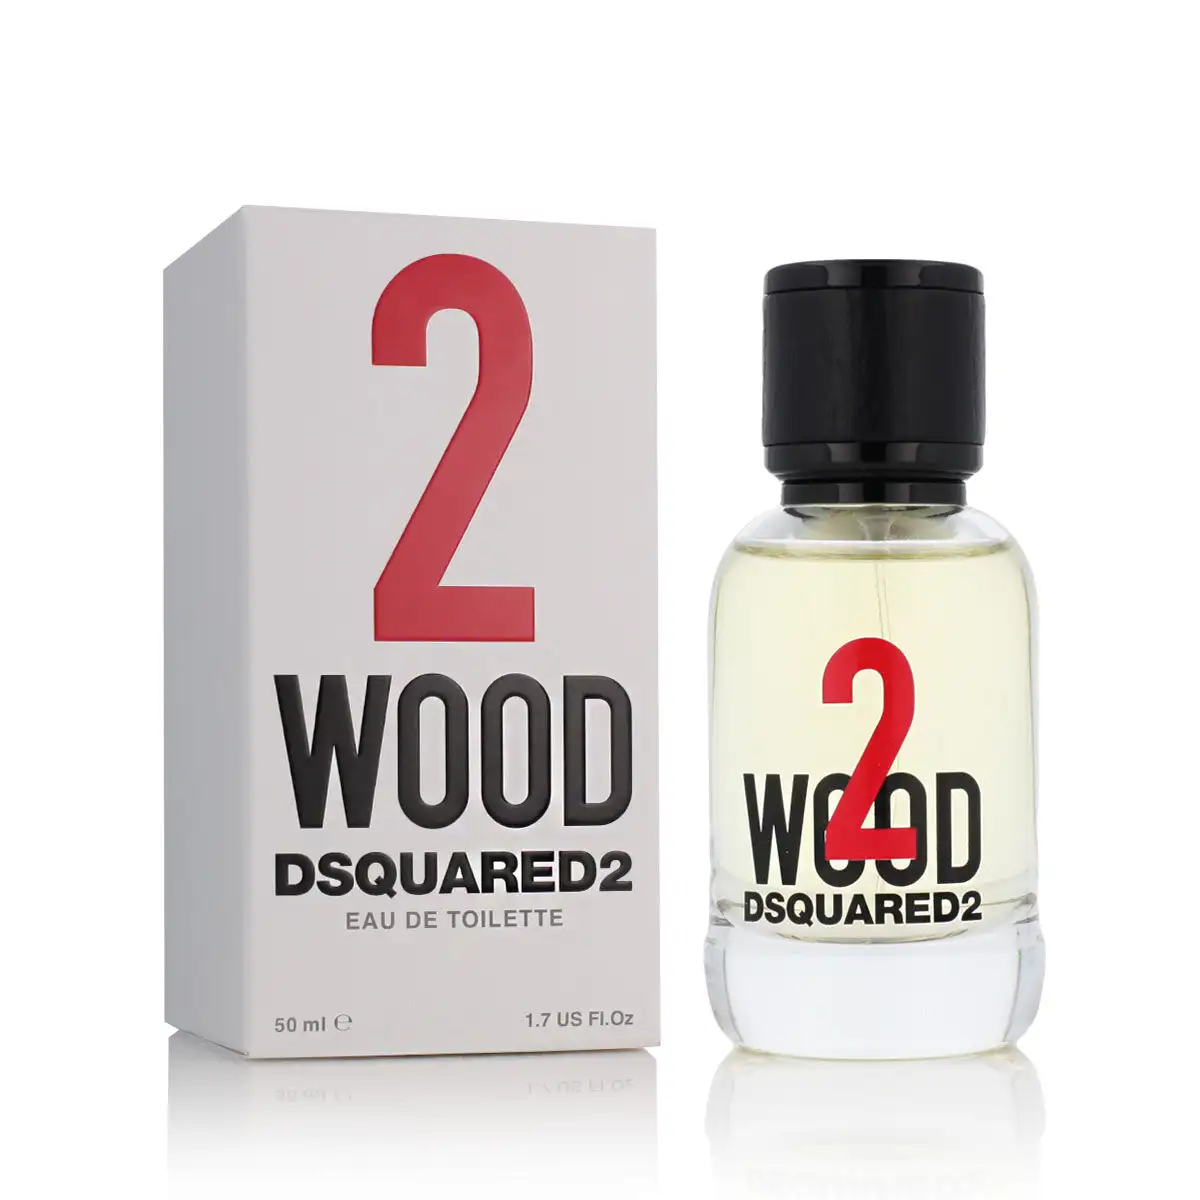 Parfum unisexe dsquared2 edt 2 wood 50 ml_8838. DIAYTAR SENEGAL - Où Choisir Devient une Découverte. Explorez notre boutique en ligne et trouvez des articles qui vous surprennent et vous ravissent à chaque clic.